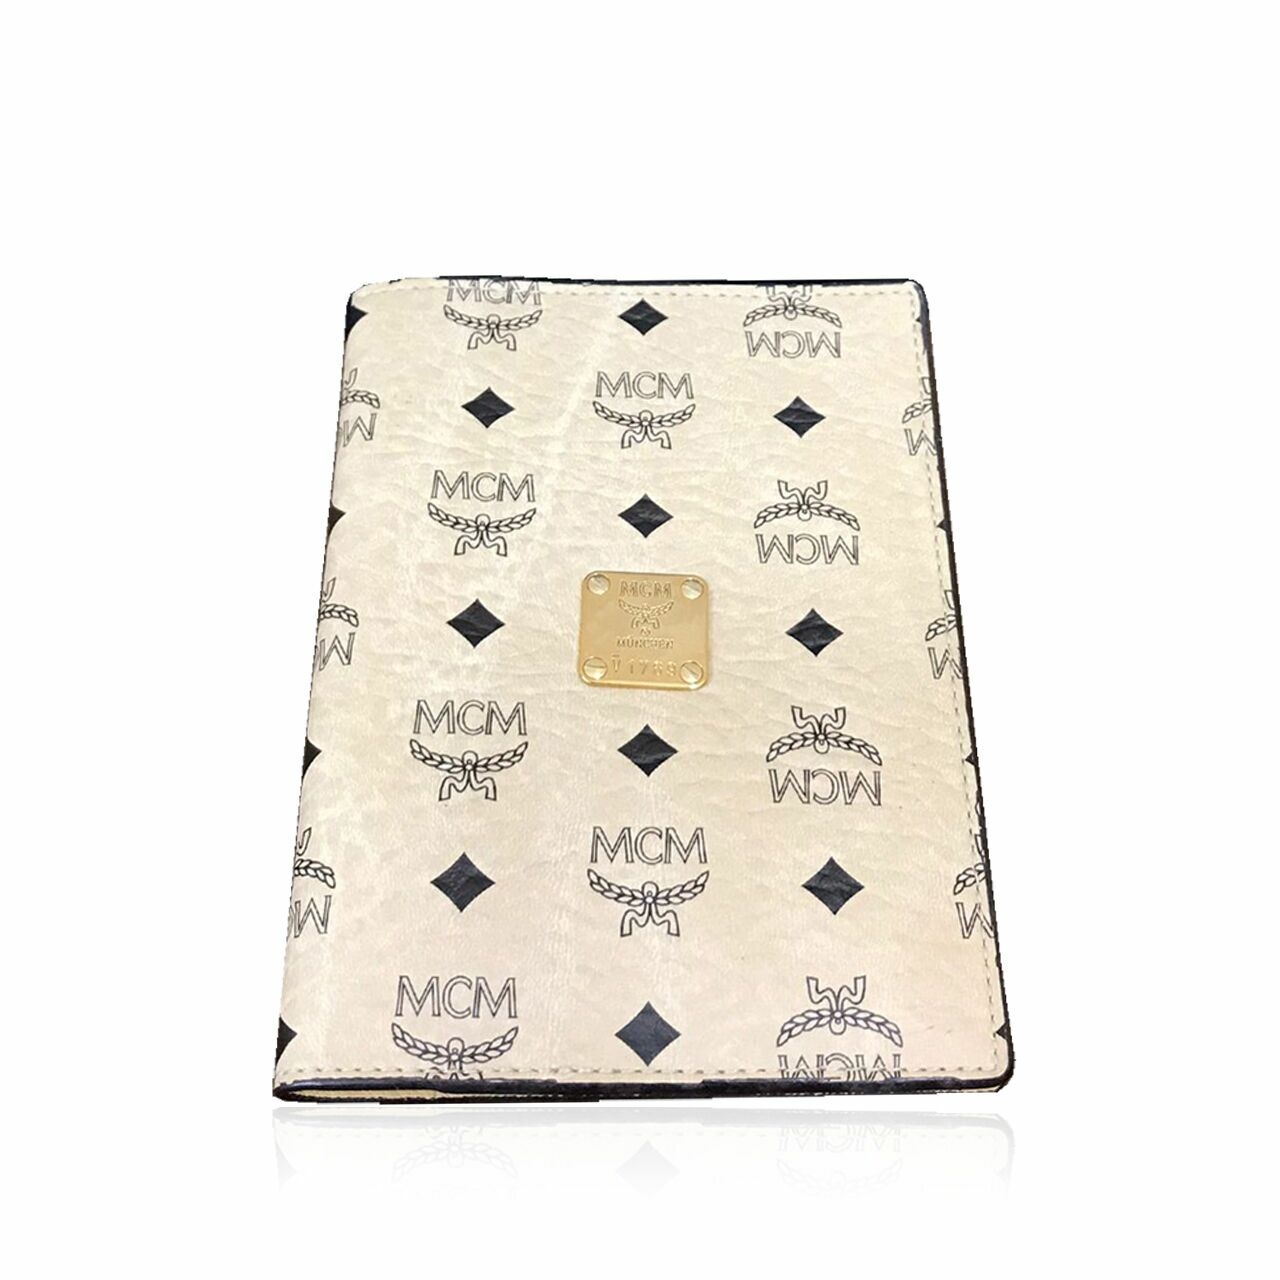  MCM Pasport Case 2015 Wallet